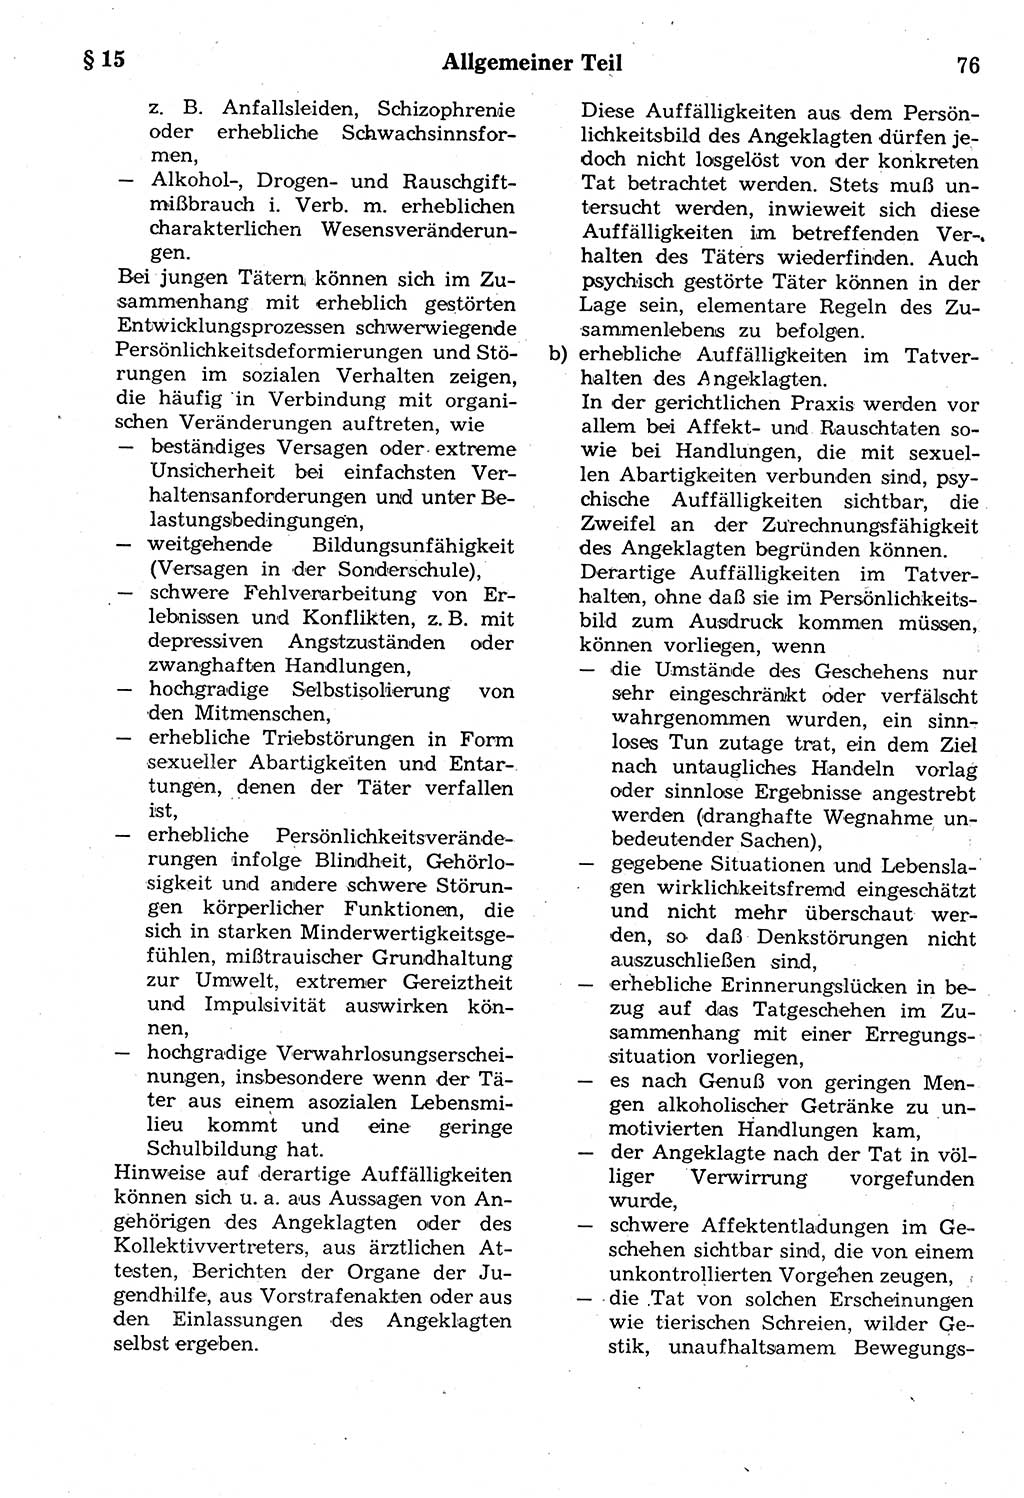 Strafrecht der Deutschen Demokratischen Republik (DDR), Kommentar zum Strafgesetzbuch (StGB) 1987, Seite 76 (Strafr. DDR Komm. StGB 1987, S. 76)